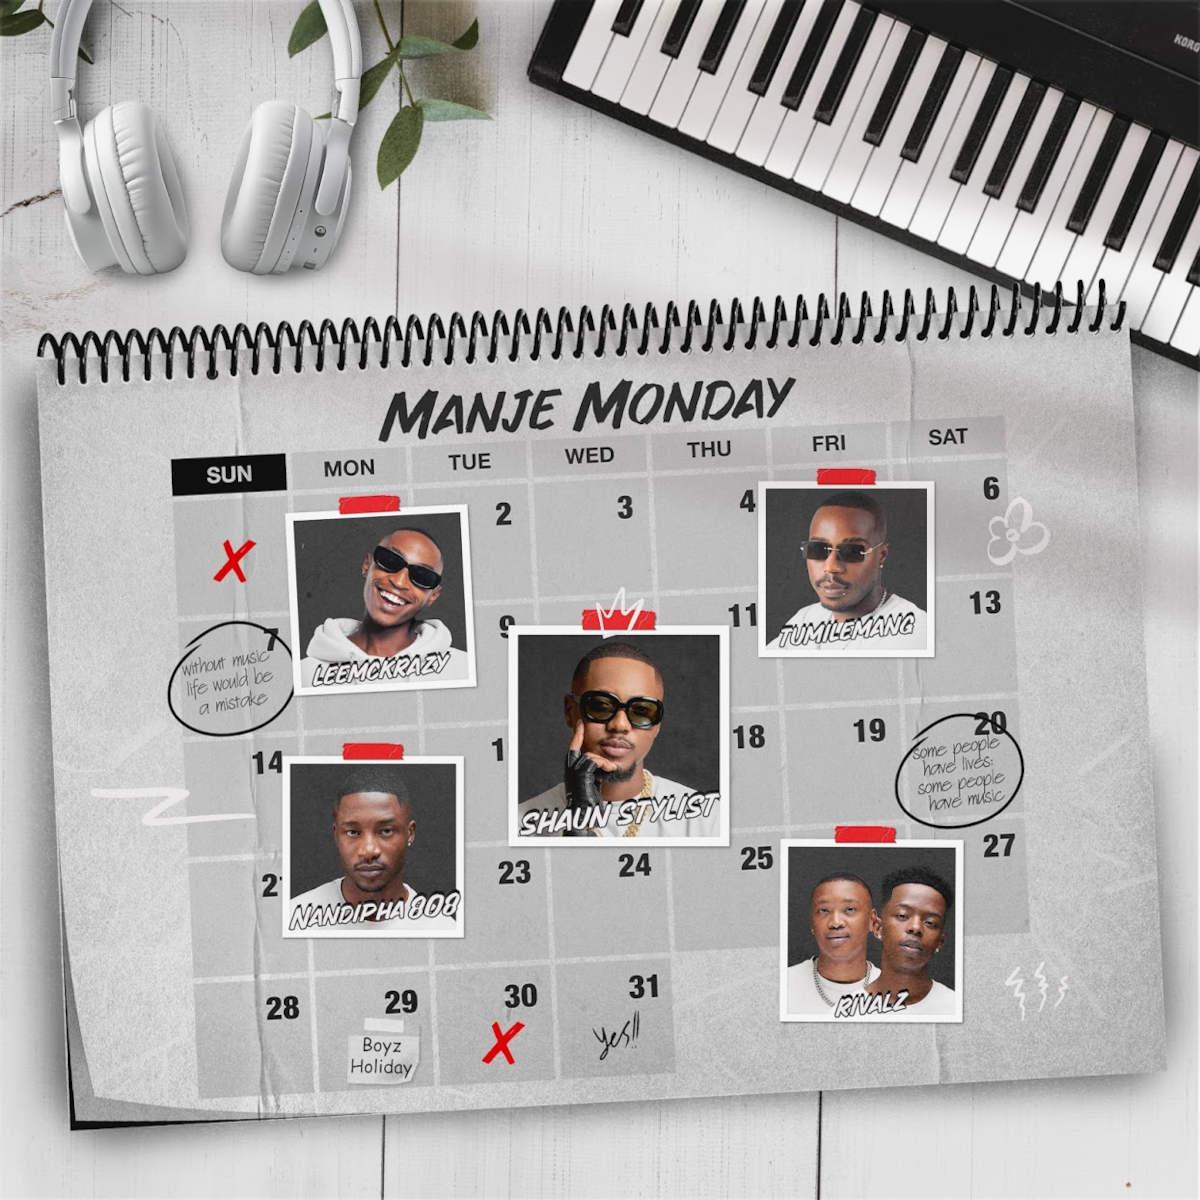 Shaun Stylist & Nandipha808 – Manje Monday (feat. Leemckrazy, Tumilemang & Rivalz)